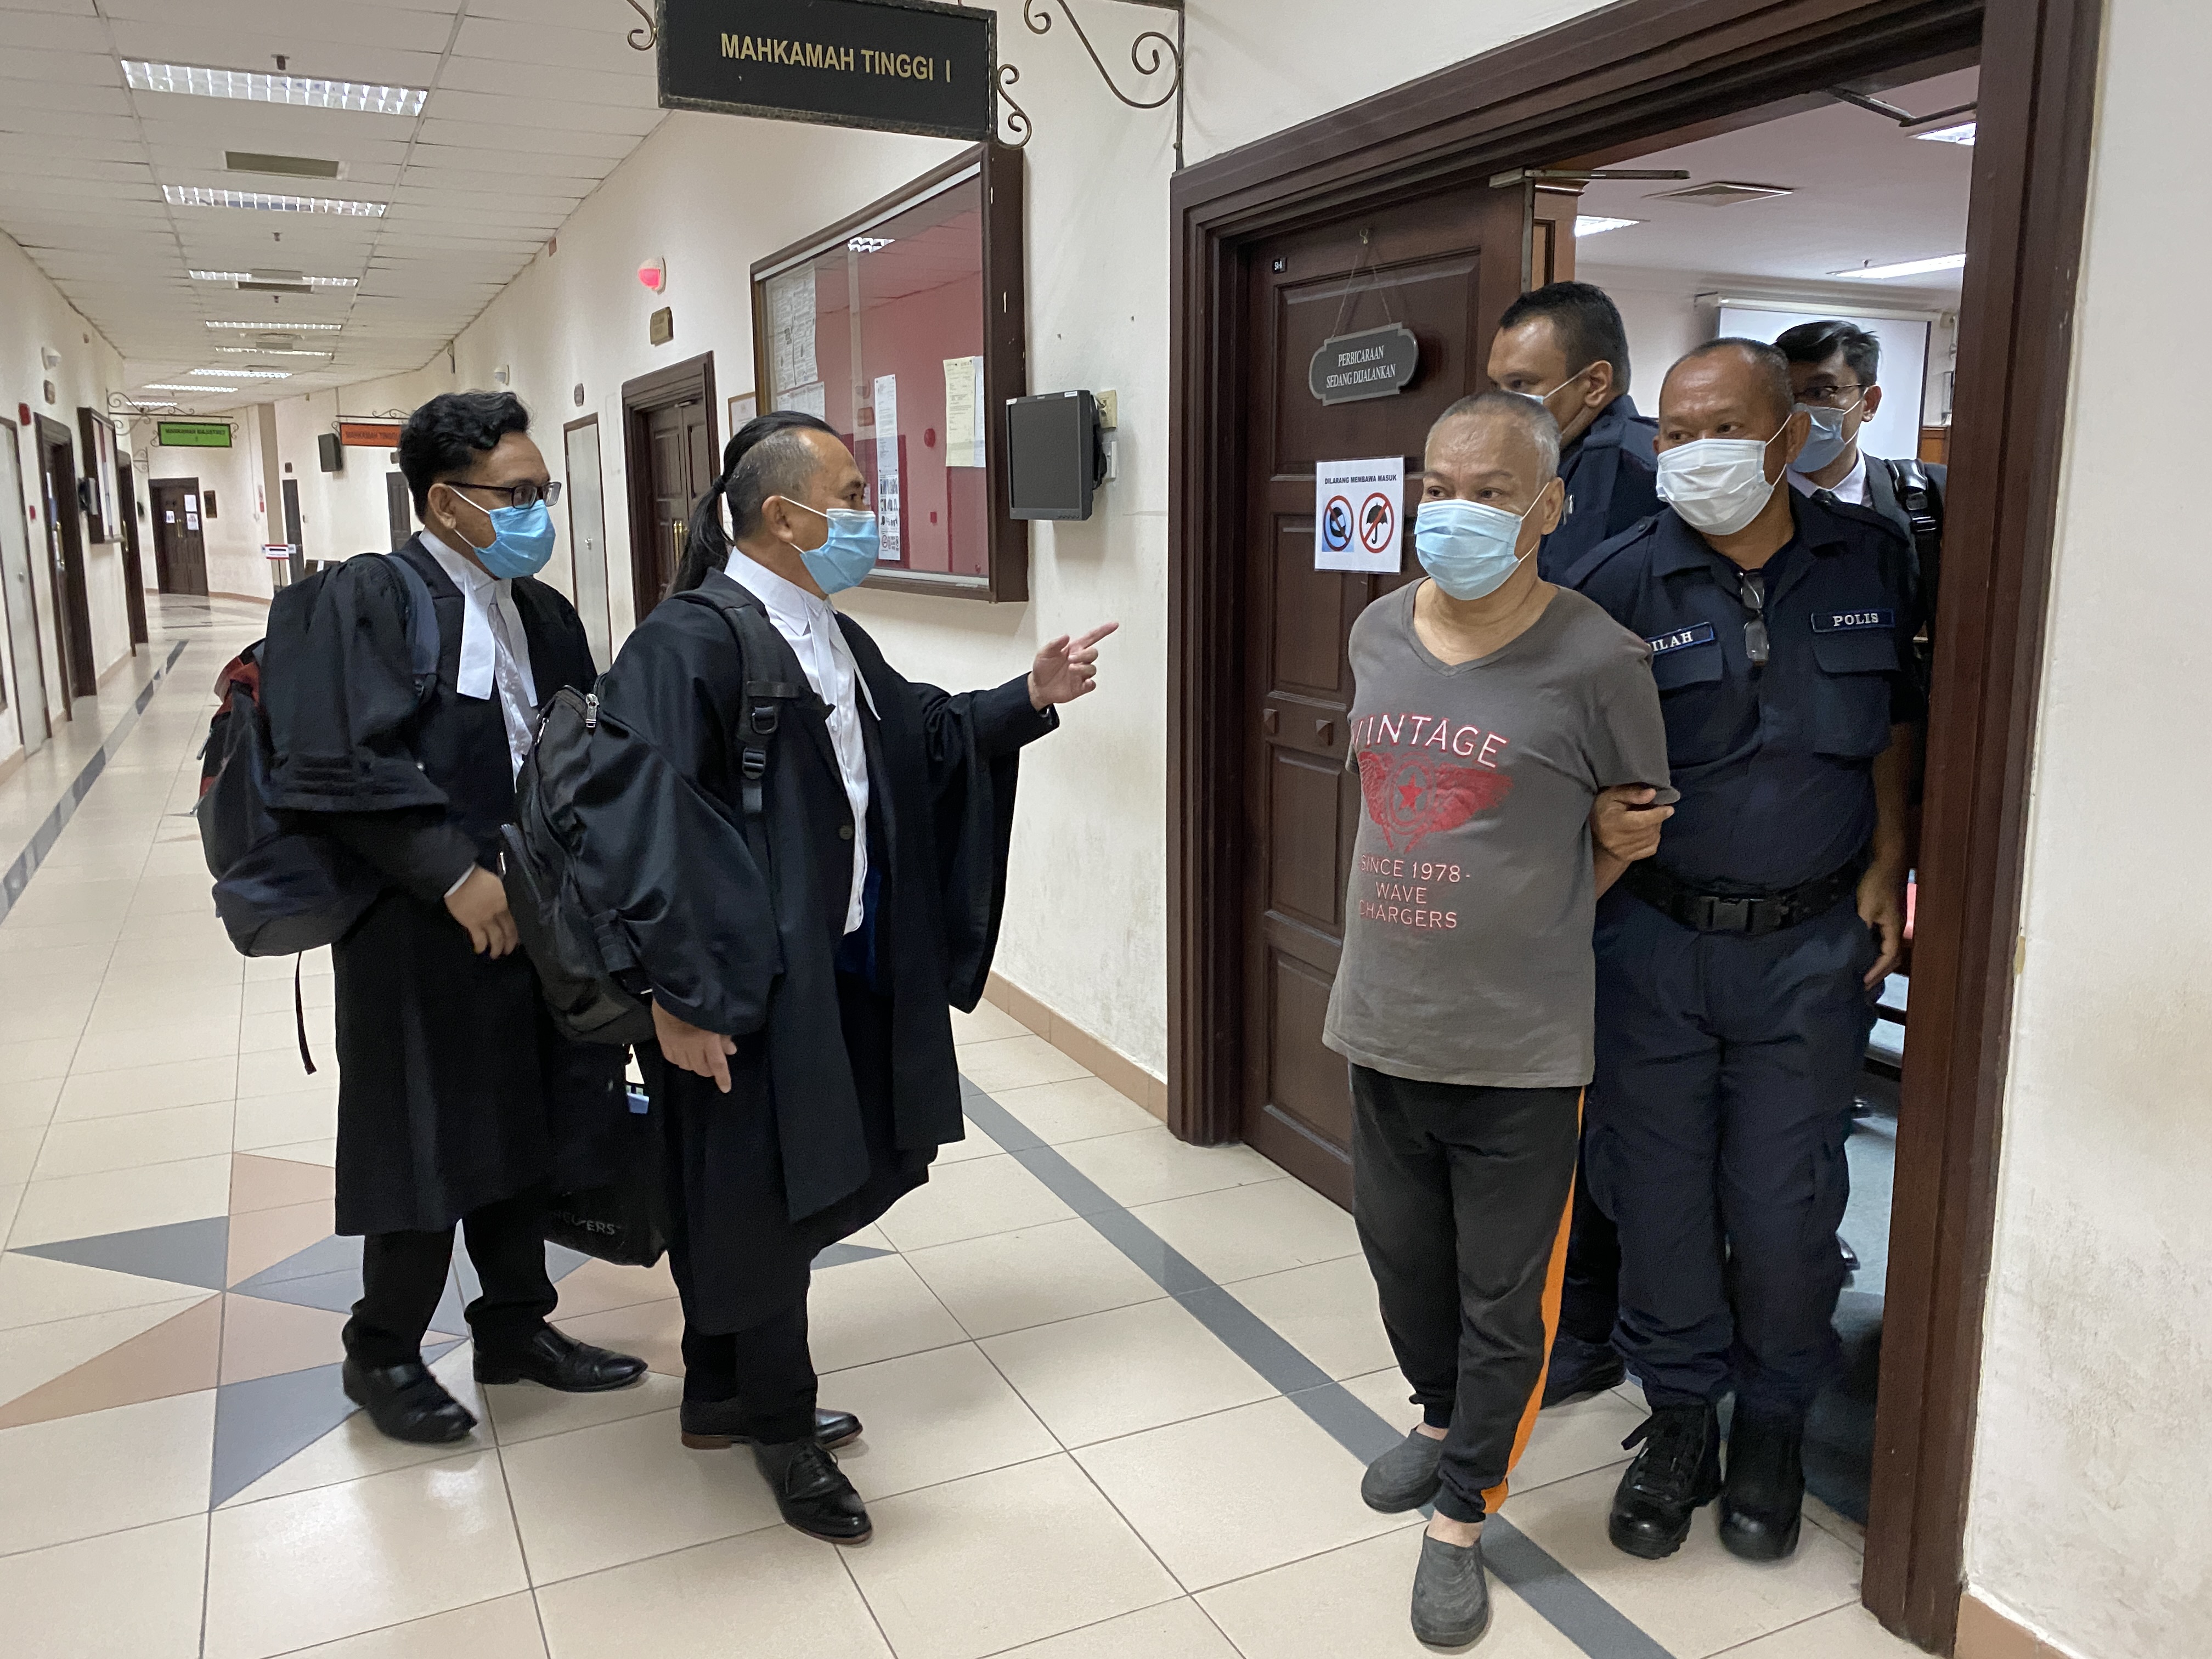 被告班丹兰谷（前排右二）被押出法庭时，其辩护律师向他解释，虽然没有被判死刑，但必须进入精神病院接受治疗。

